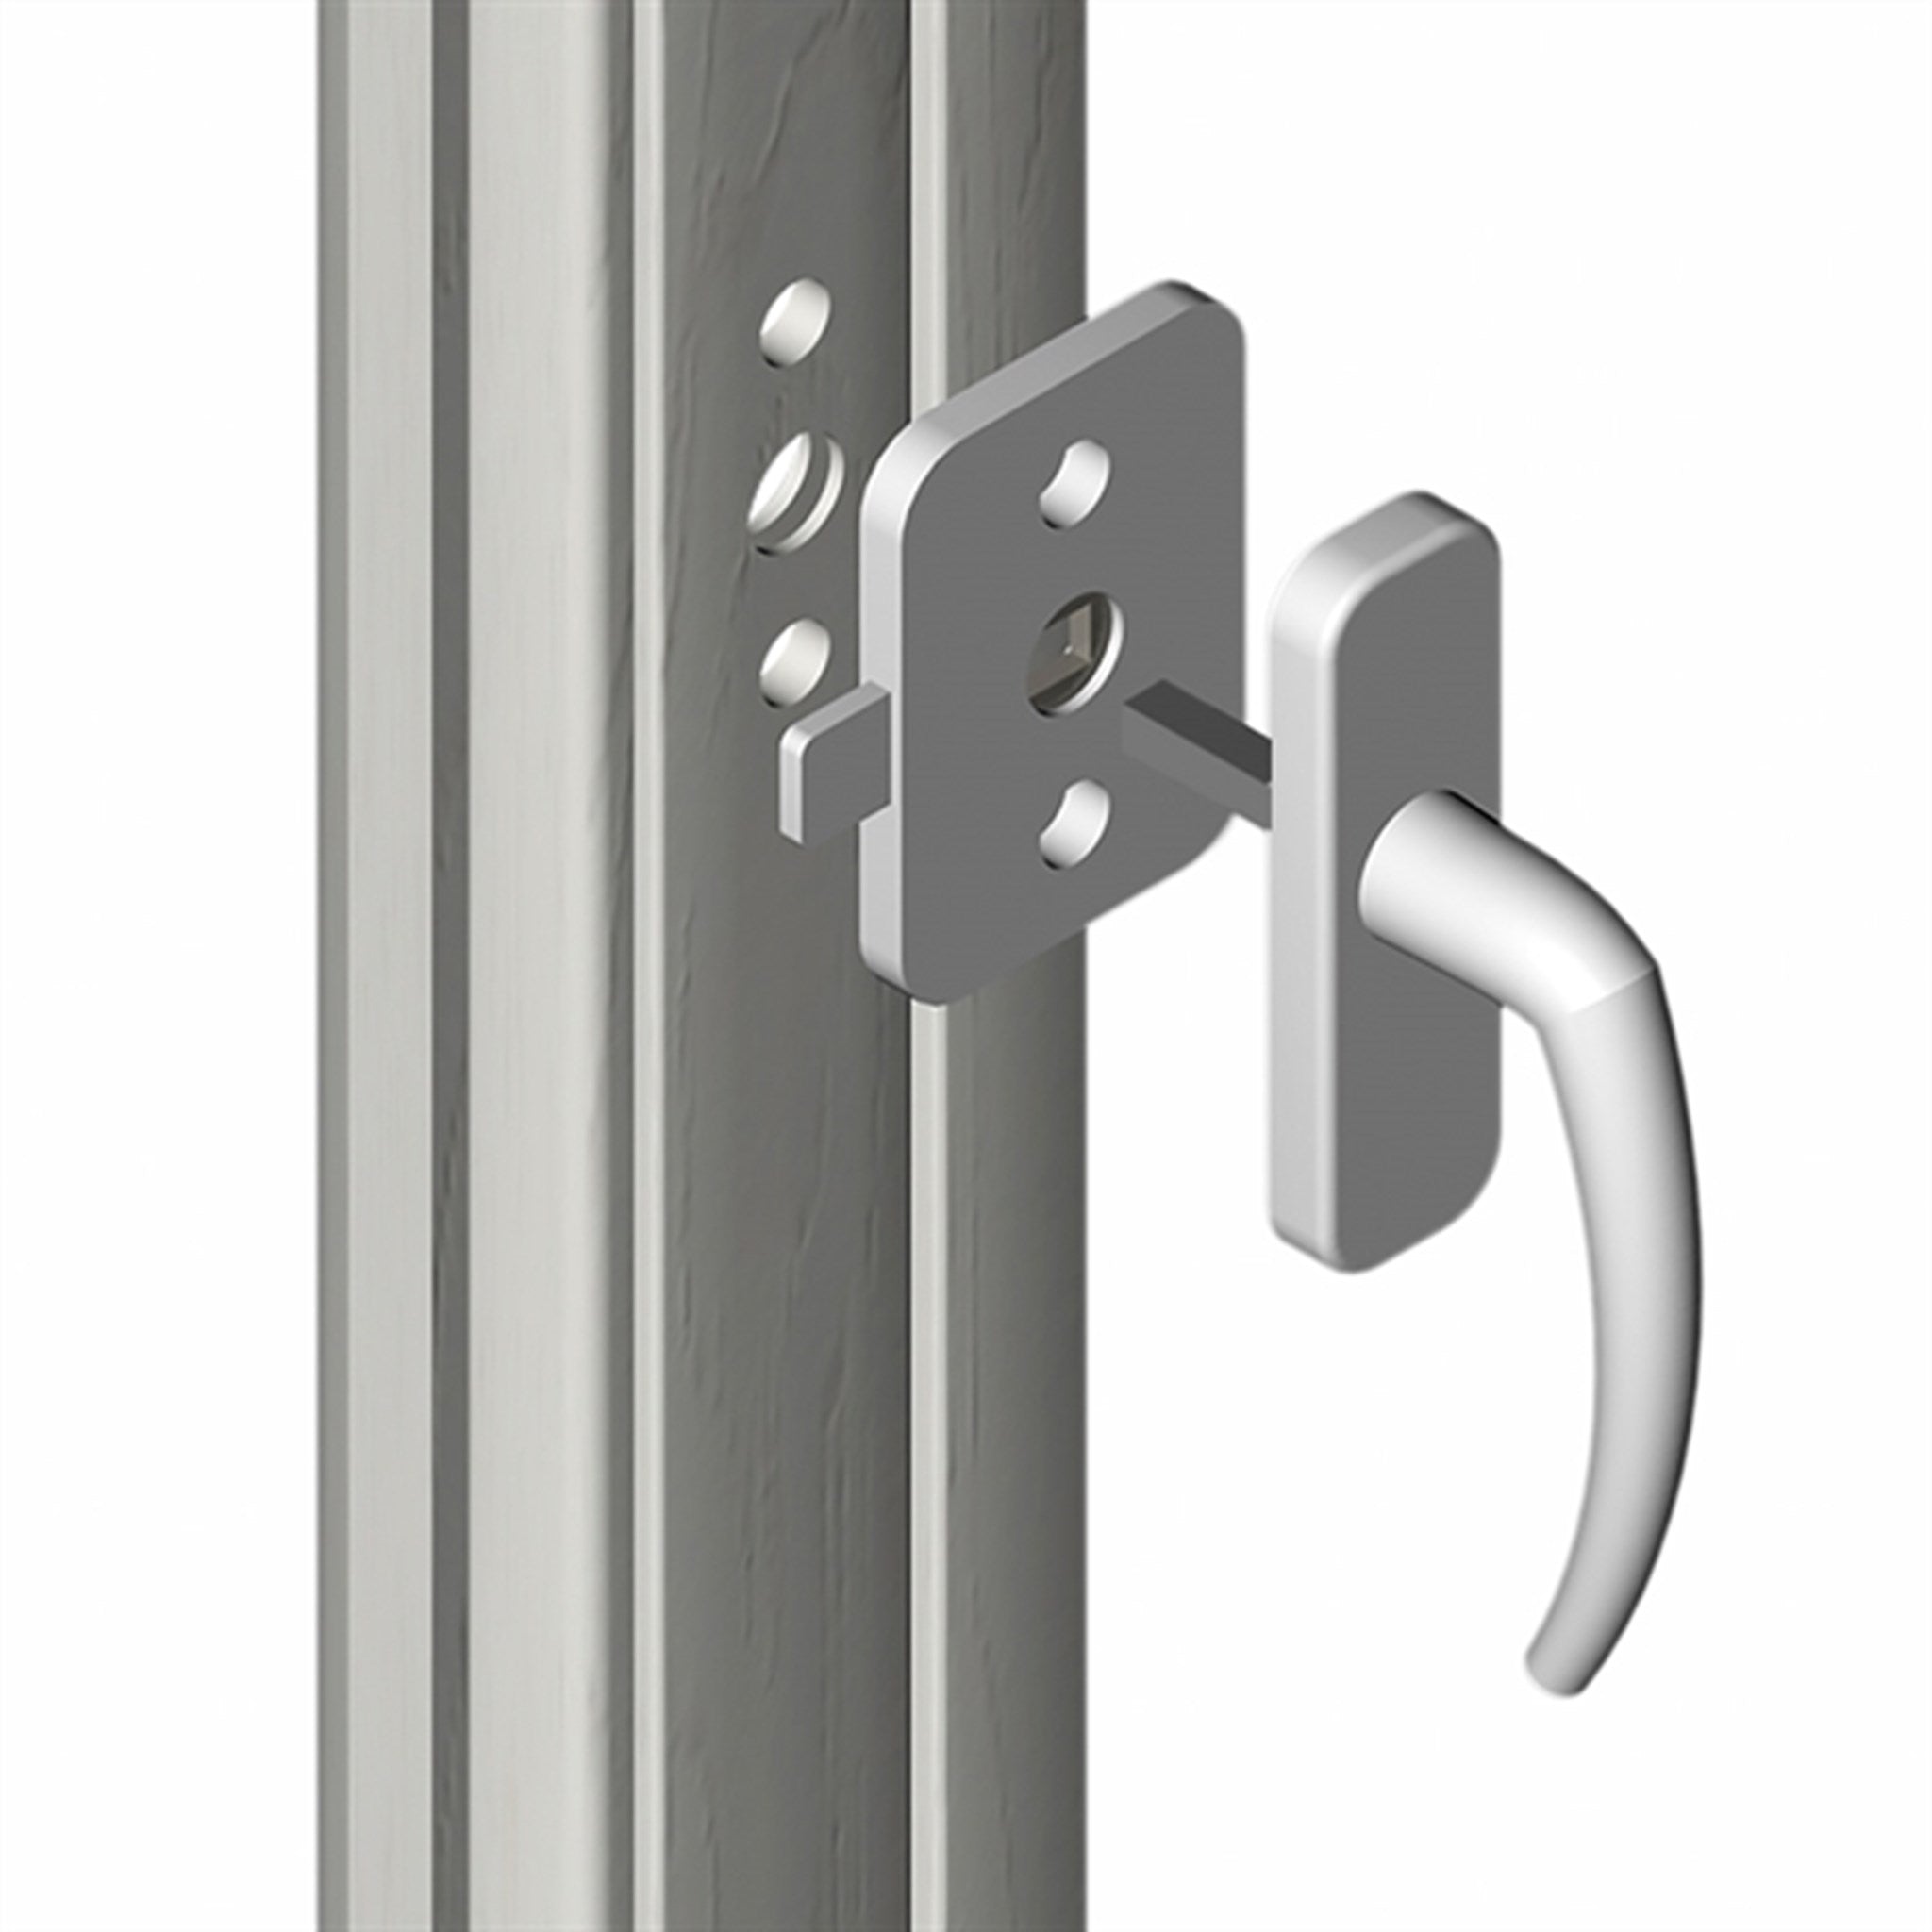 REER Security Lock for Window/Balcony Door 2